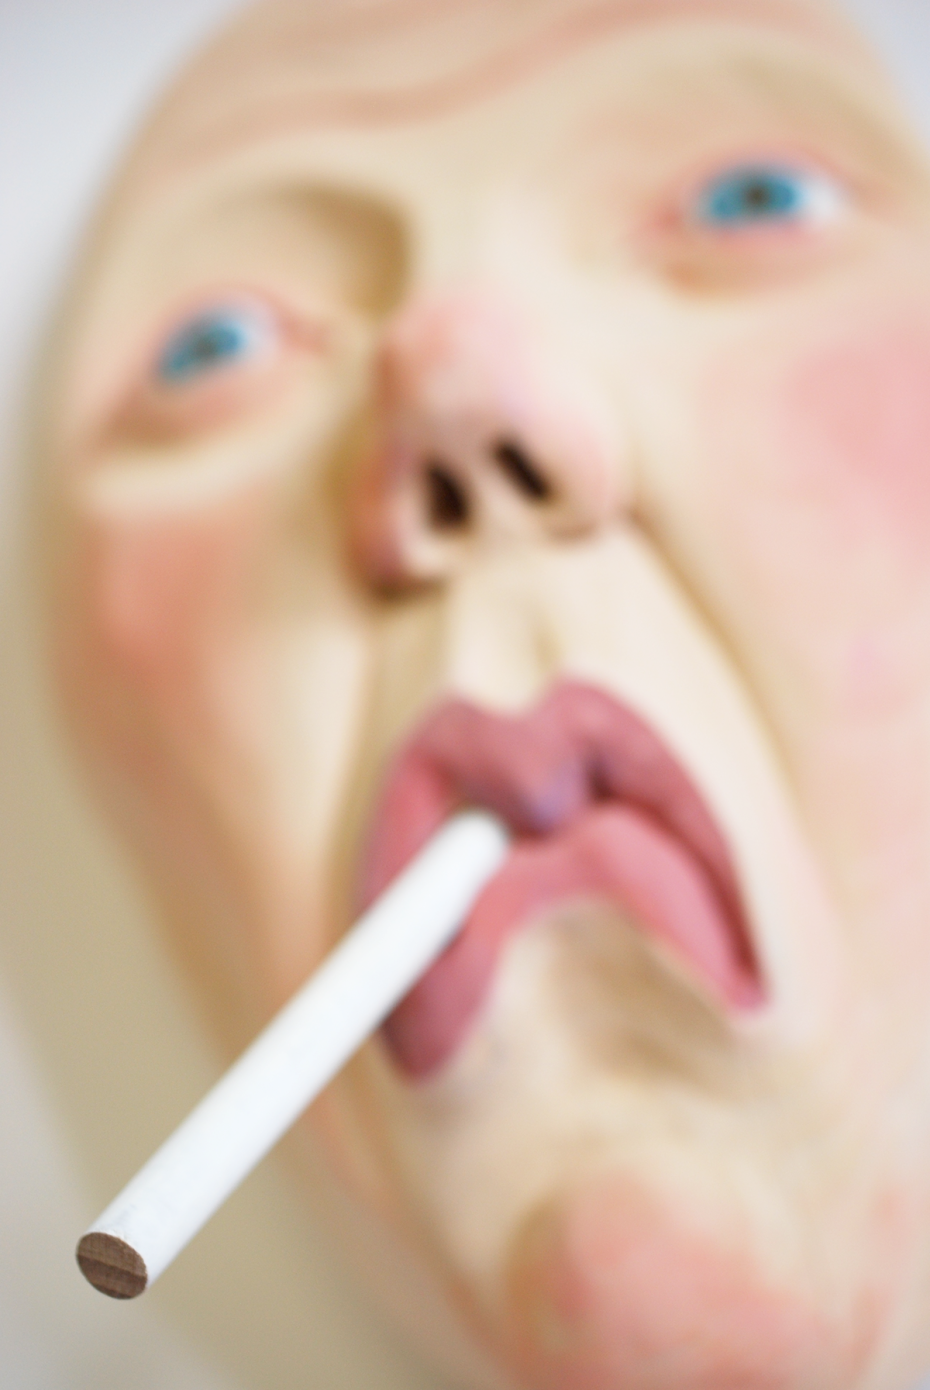 "Mask of the Smoking Blonde", 2014